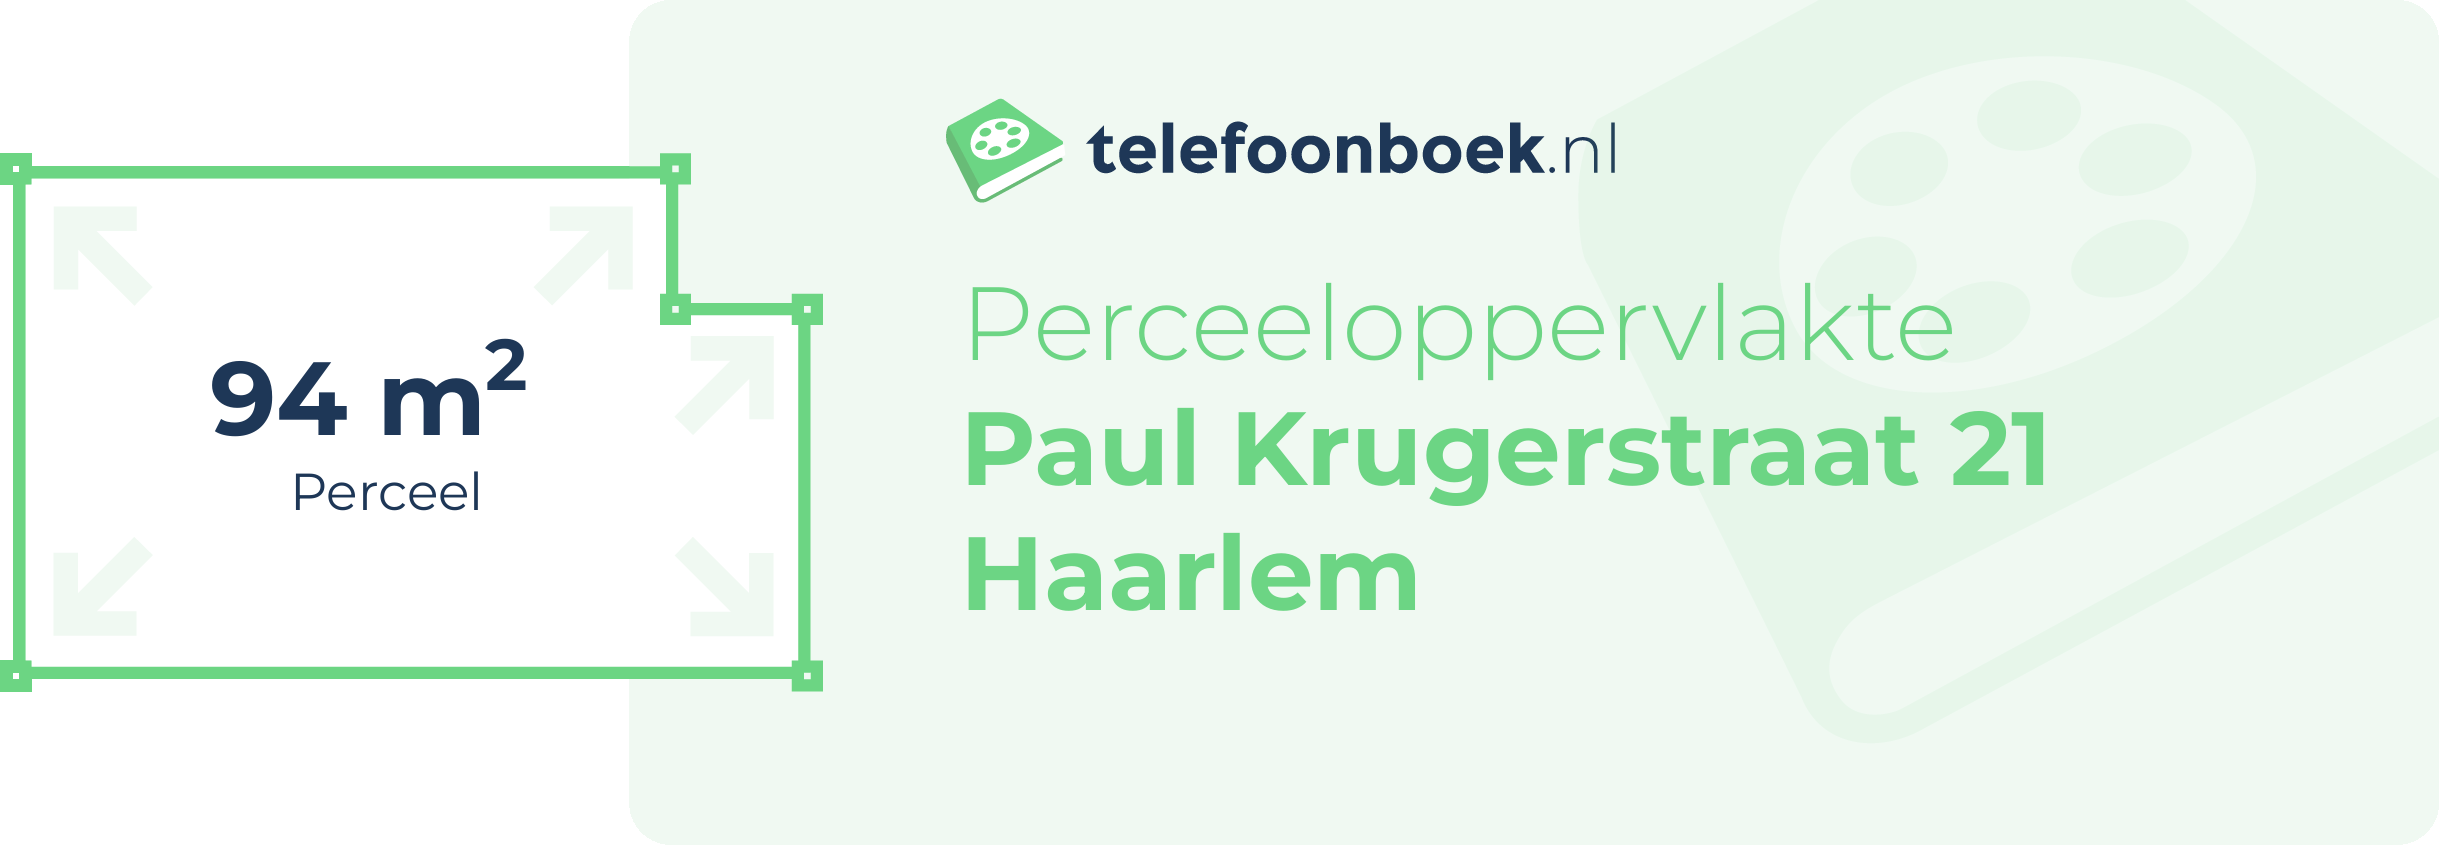 Perceeloppervlakte Paul Krugerstraat 21 Haarlem